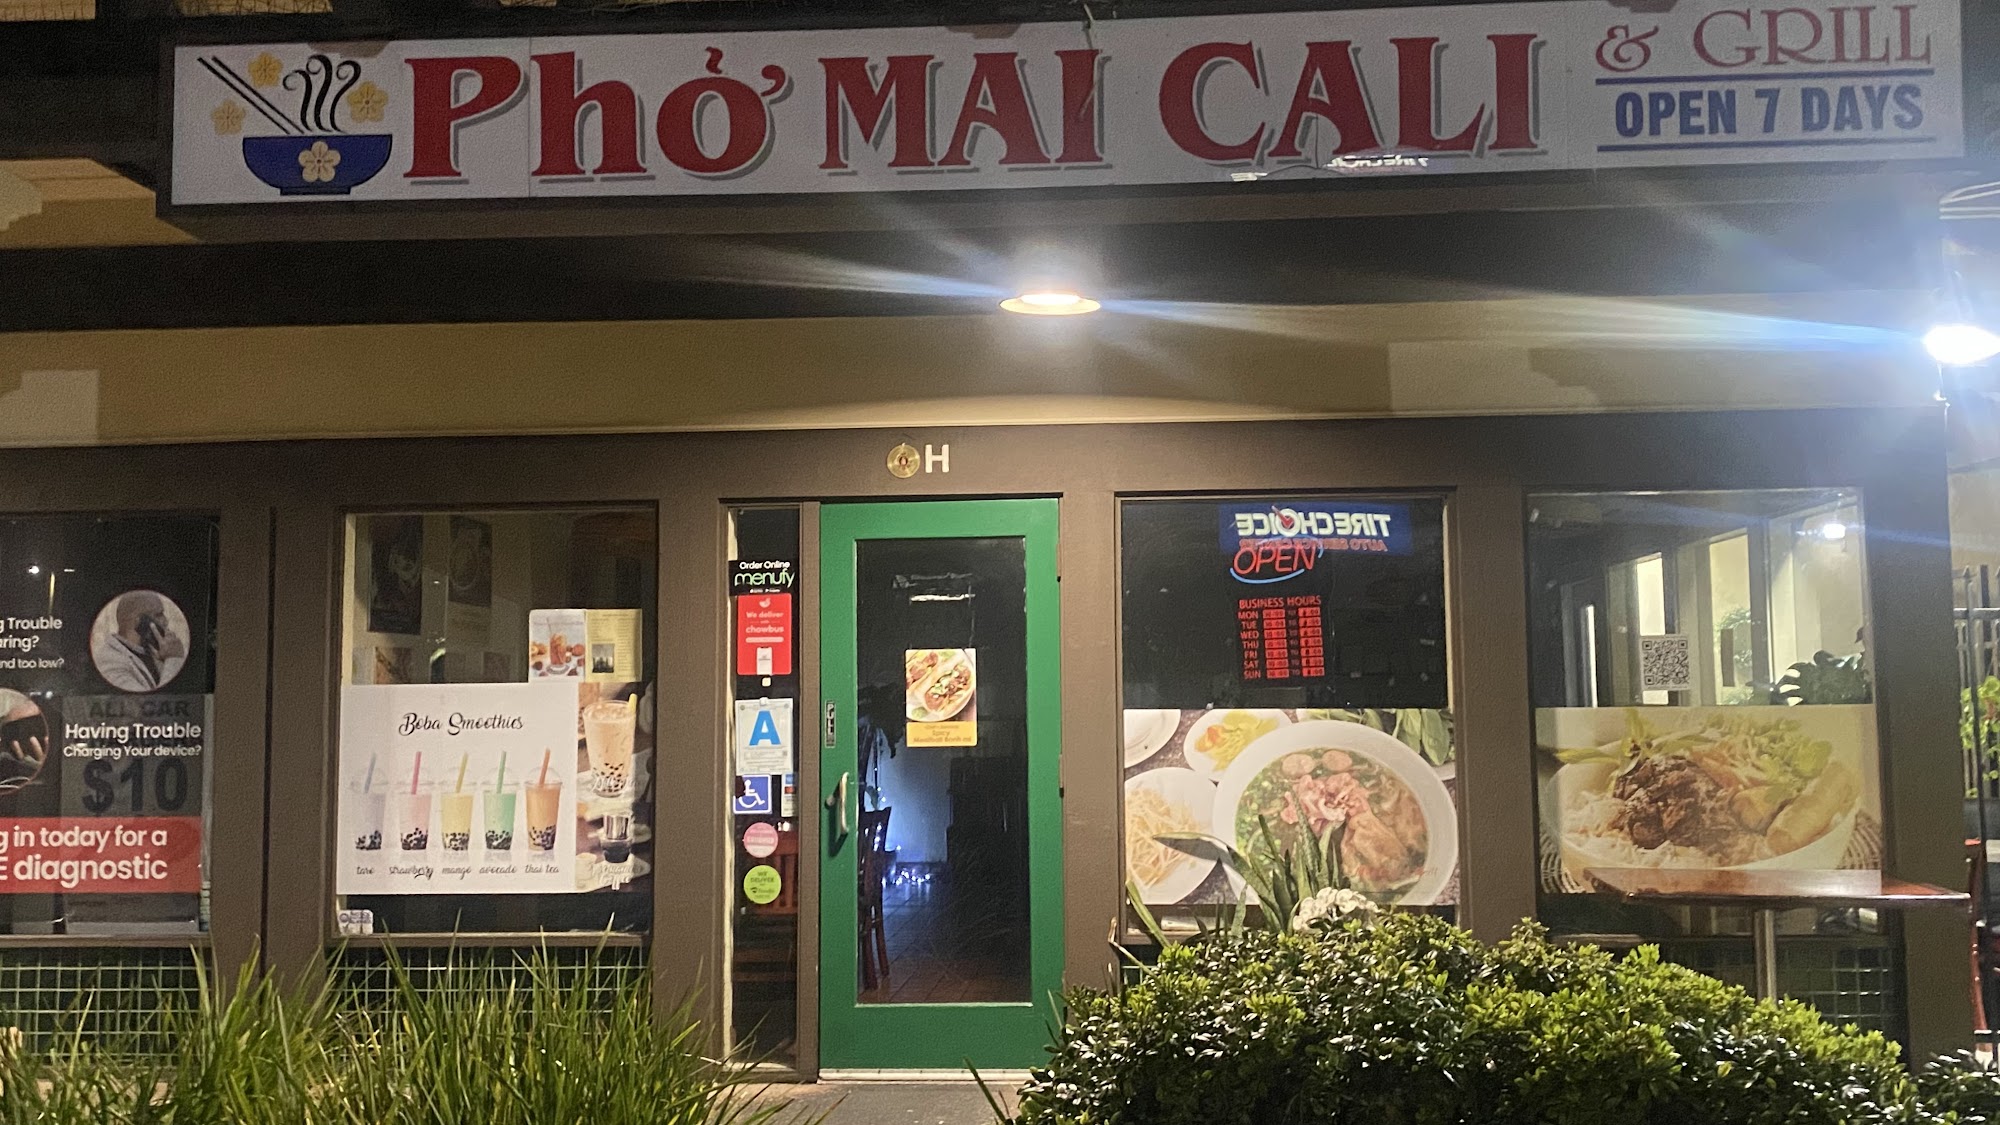 Pho Mai Cali & Grill